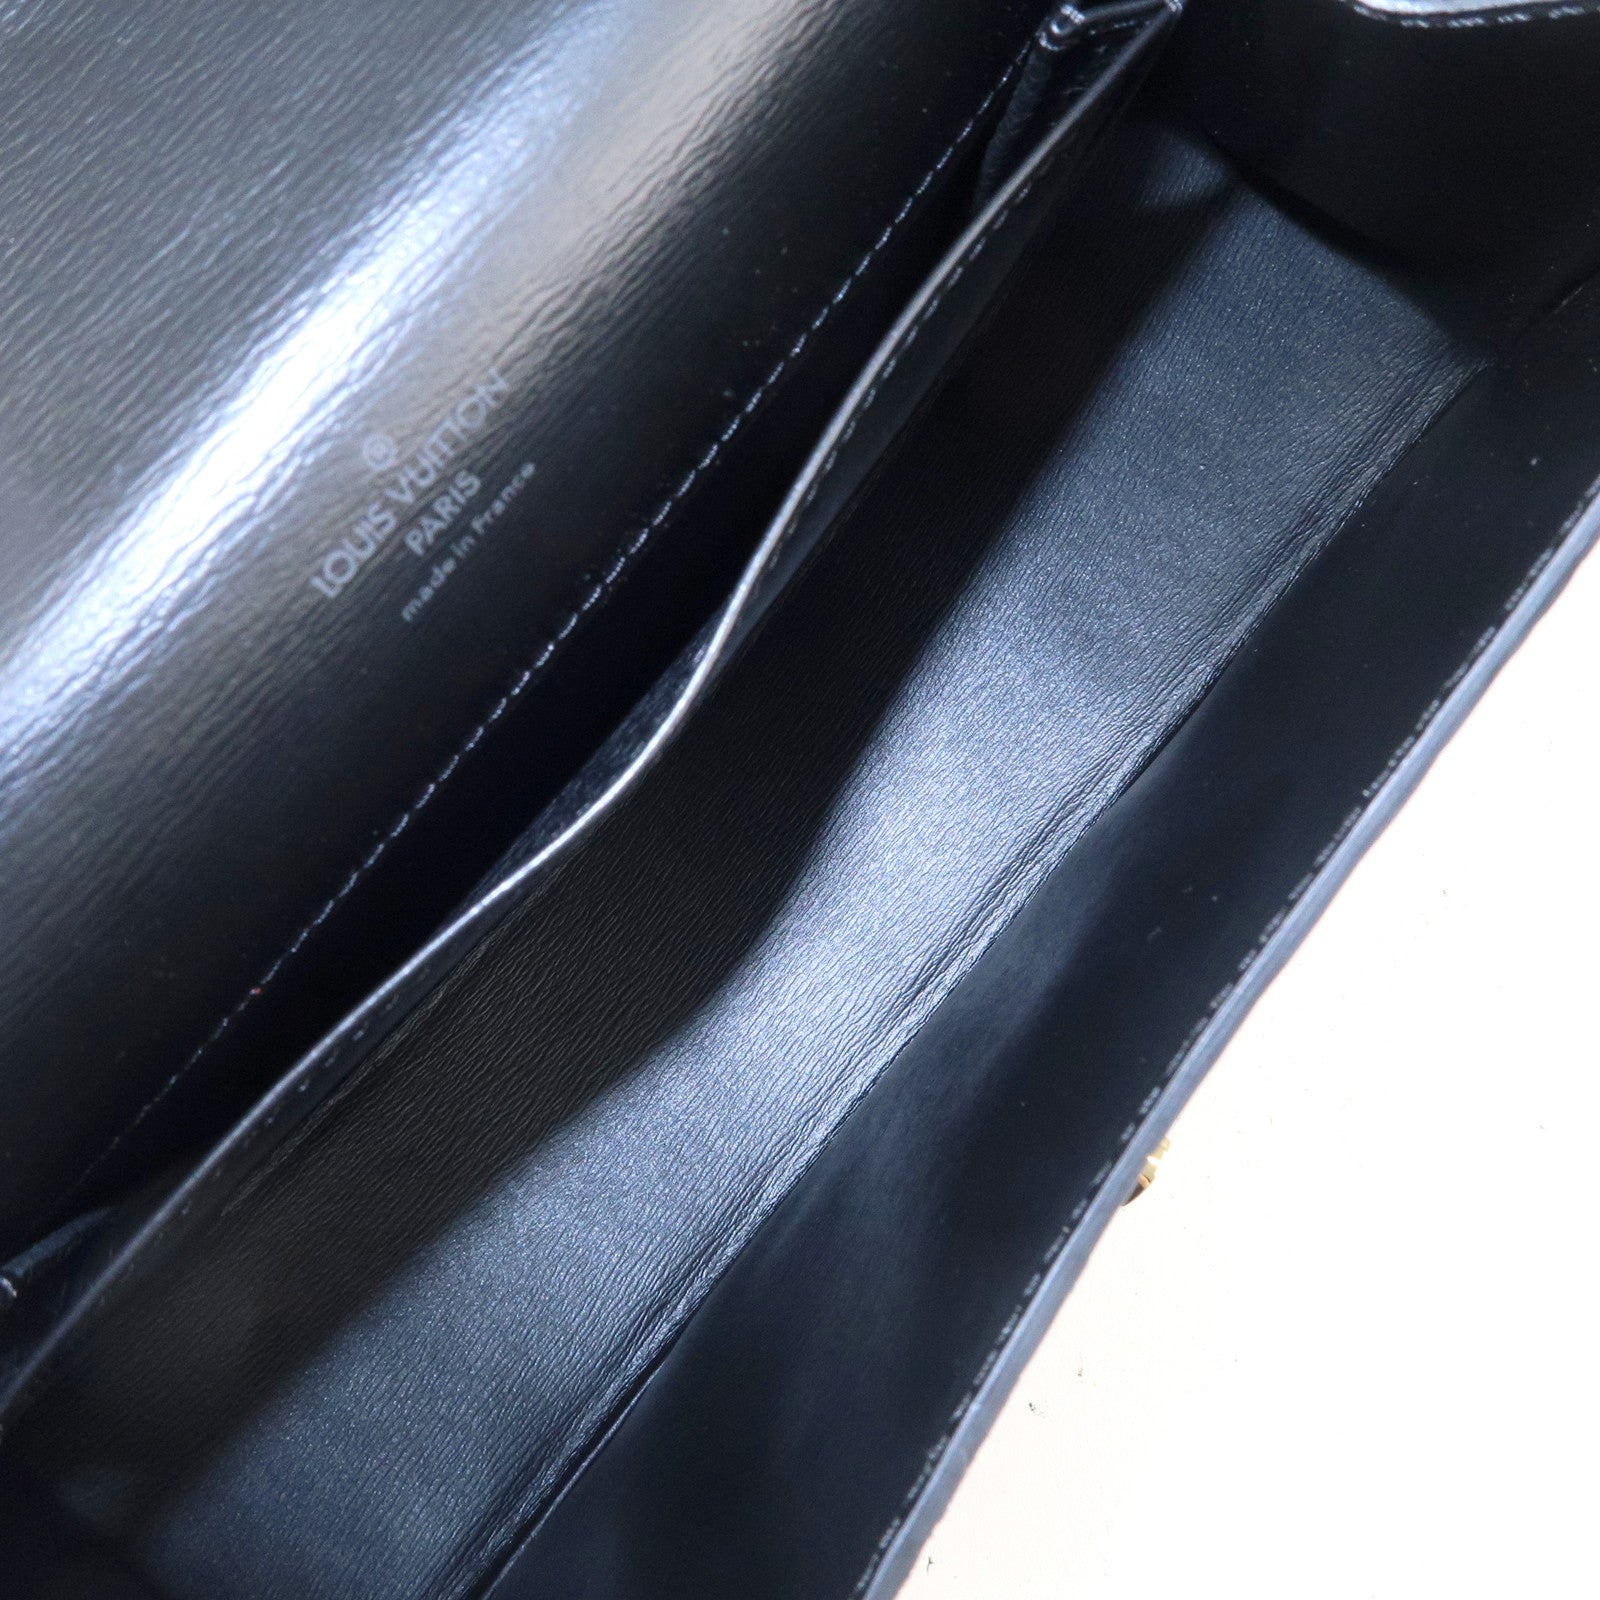 Louis-Vuitton-Epi-Tilsit-Shoulder-Bag-Hand-Bag-Noir-M52482 – dct